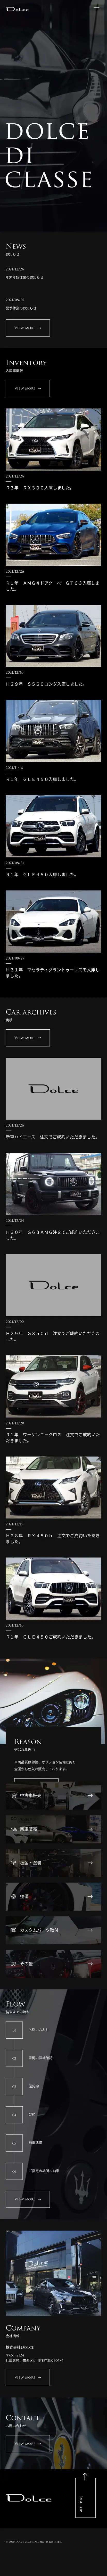 キャプチャ画面 会社名:株式会社DoLceプロジェクト名:DoLce 画面名:A デバイス名:SPカテゴリ:自動車・タイヤタグ:SP